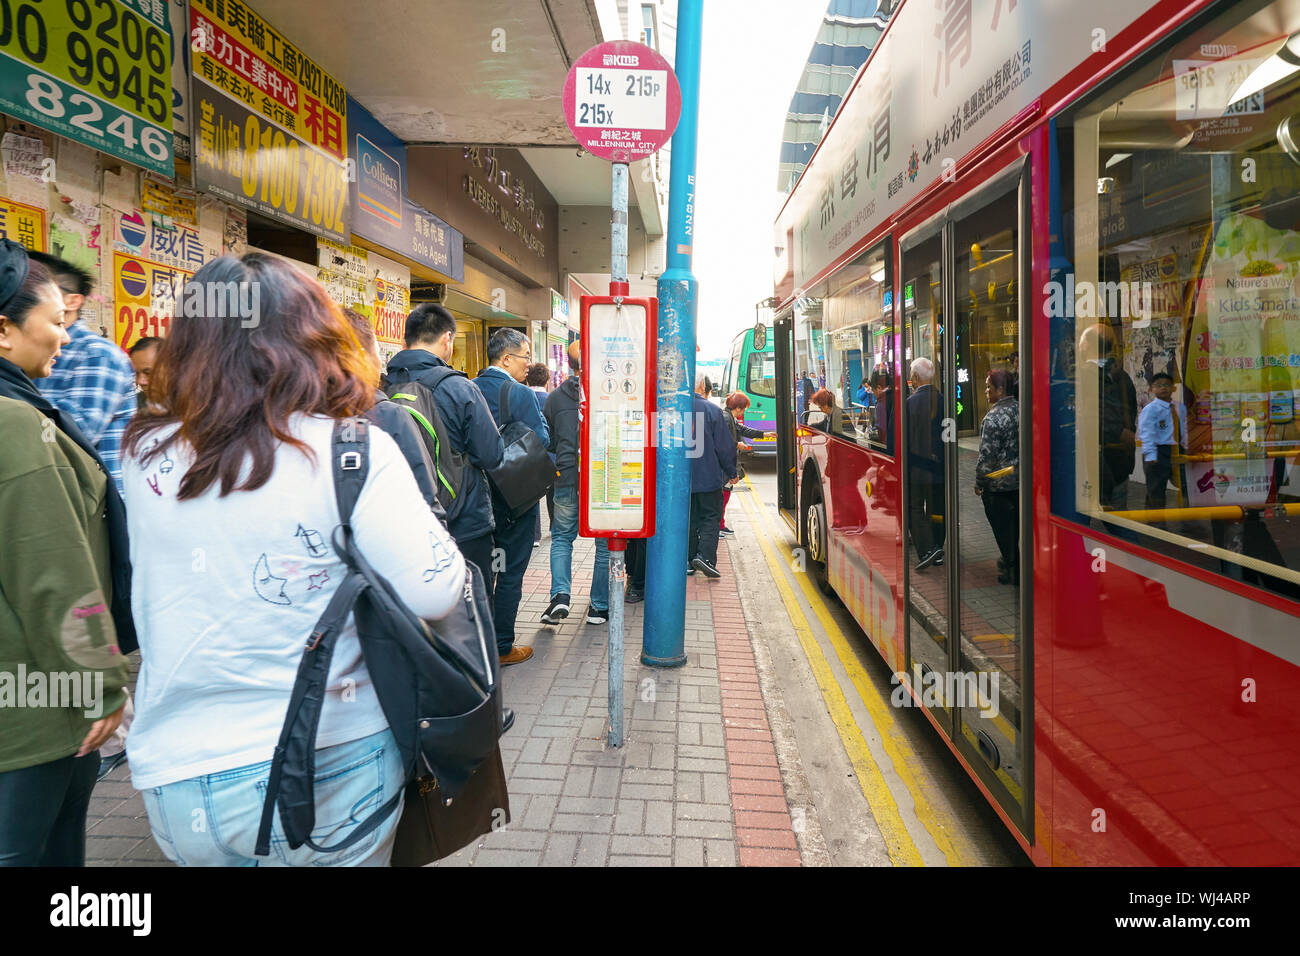 HONG KONG, CHINA - CIRCA JANUARY, 2019: people boarding a bus at a bus stop in Hong Kong. Stock Photo